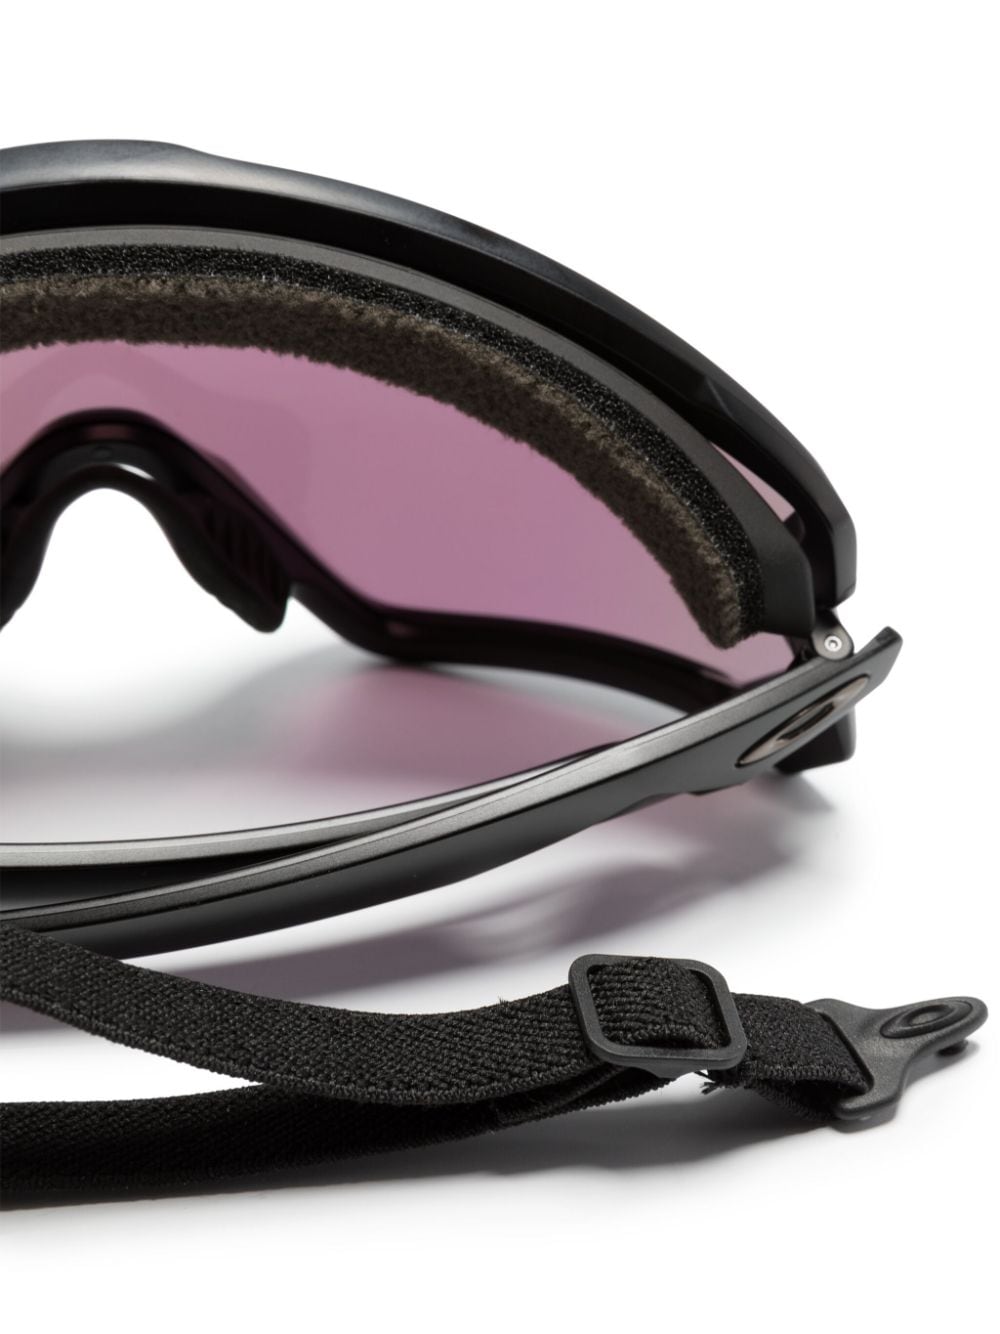 Wind Jacket 2.0 shield-frame sunglasses<BR/><BR/><BR/>